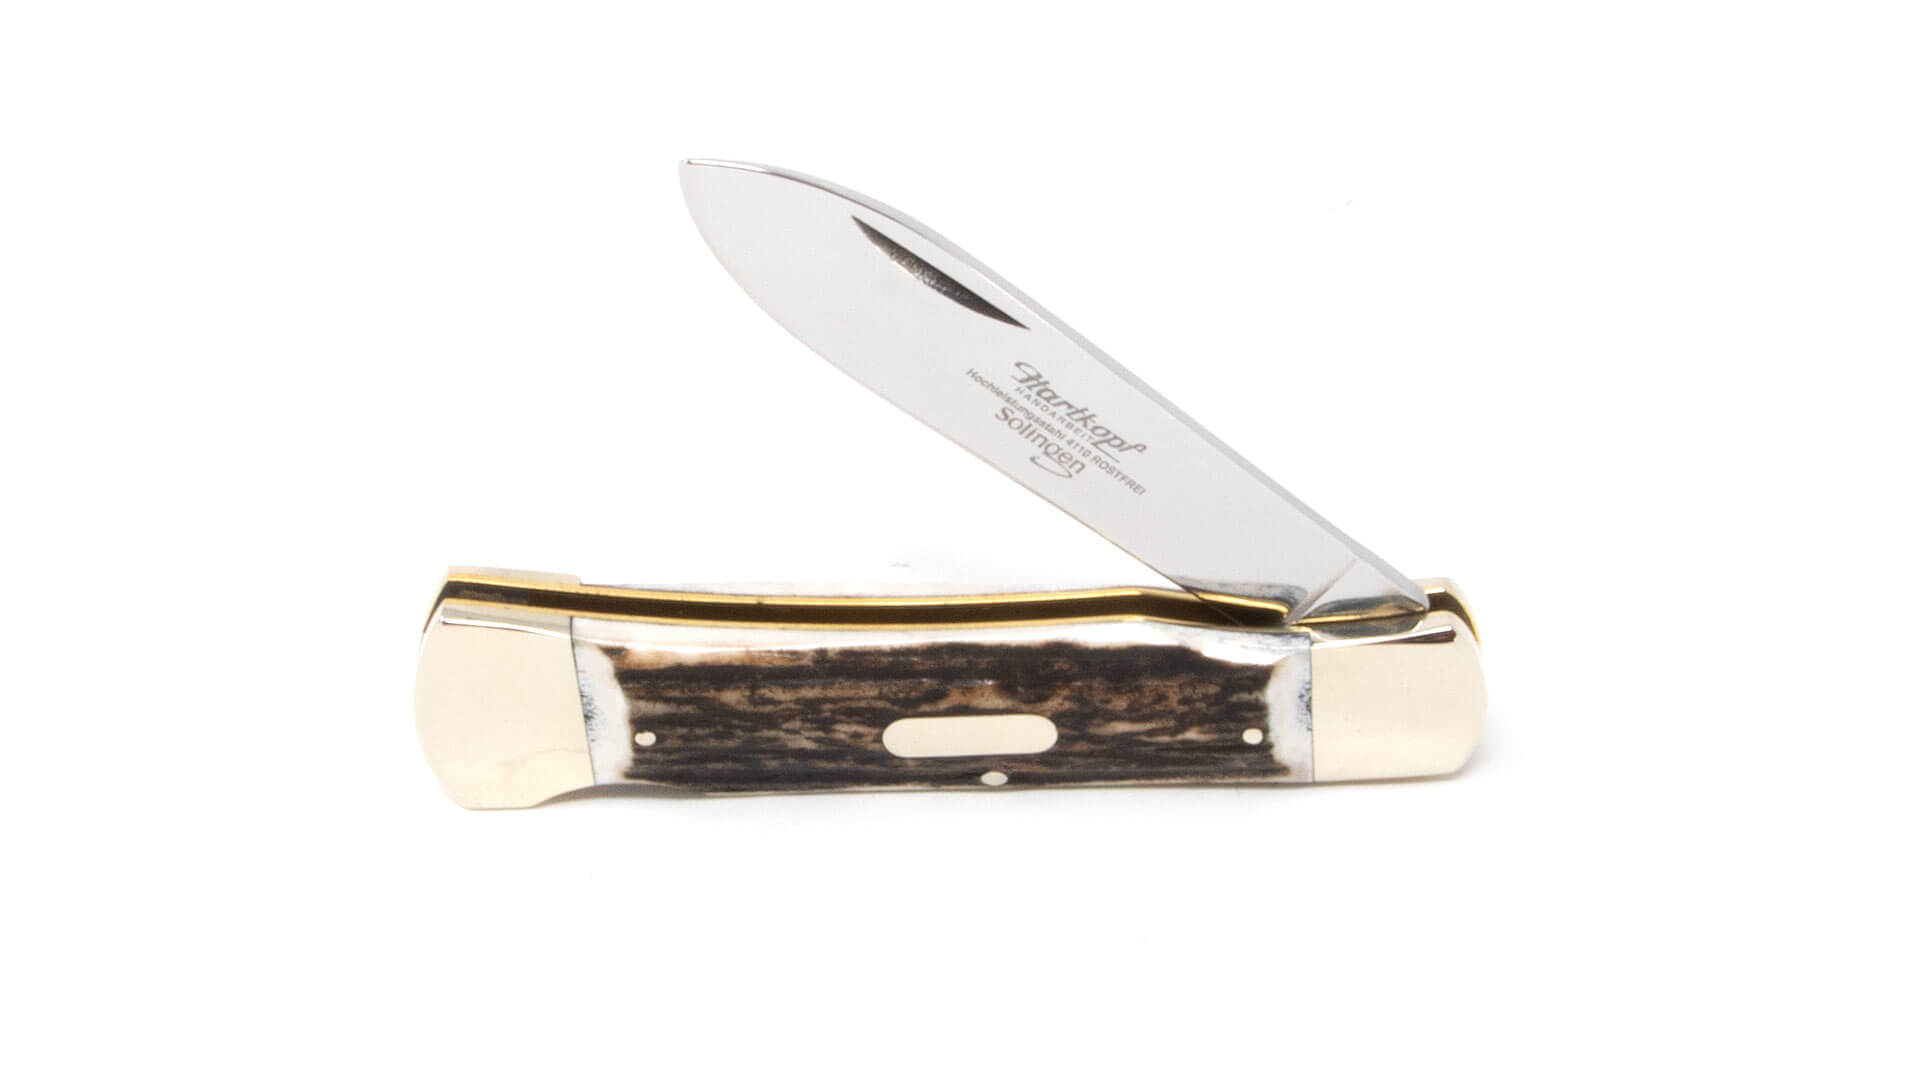 Hartkopf hunting pocket knife